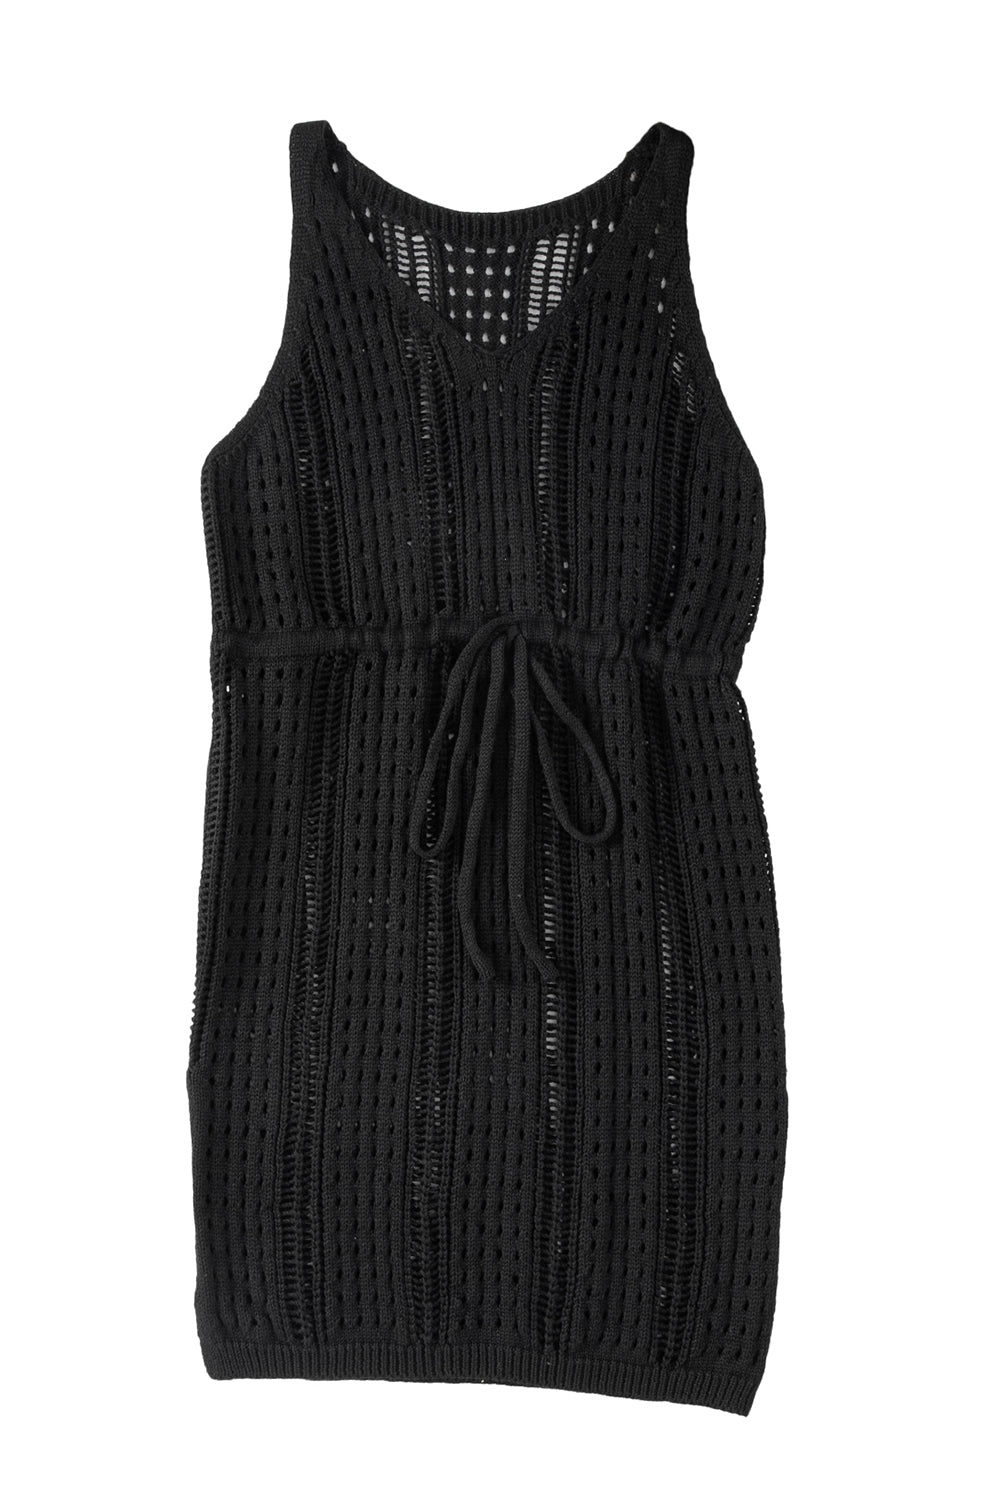 Crna heklana izdubljena haljina za plažu bez rukava s uzicom